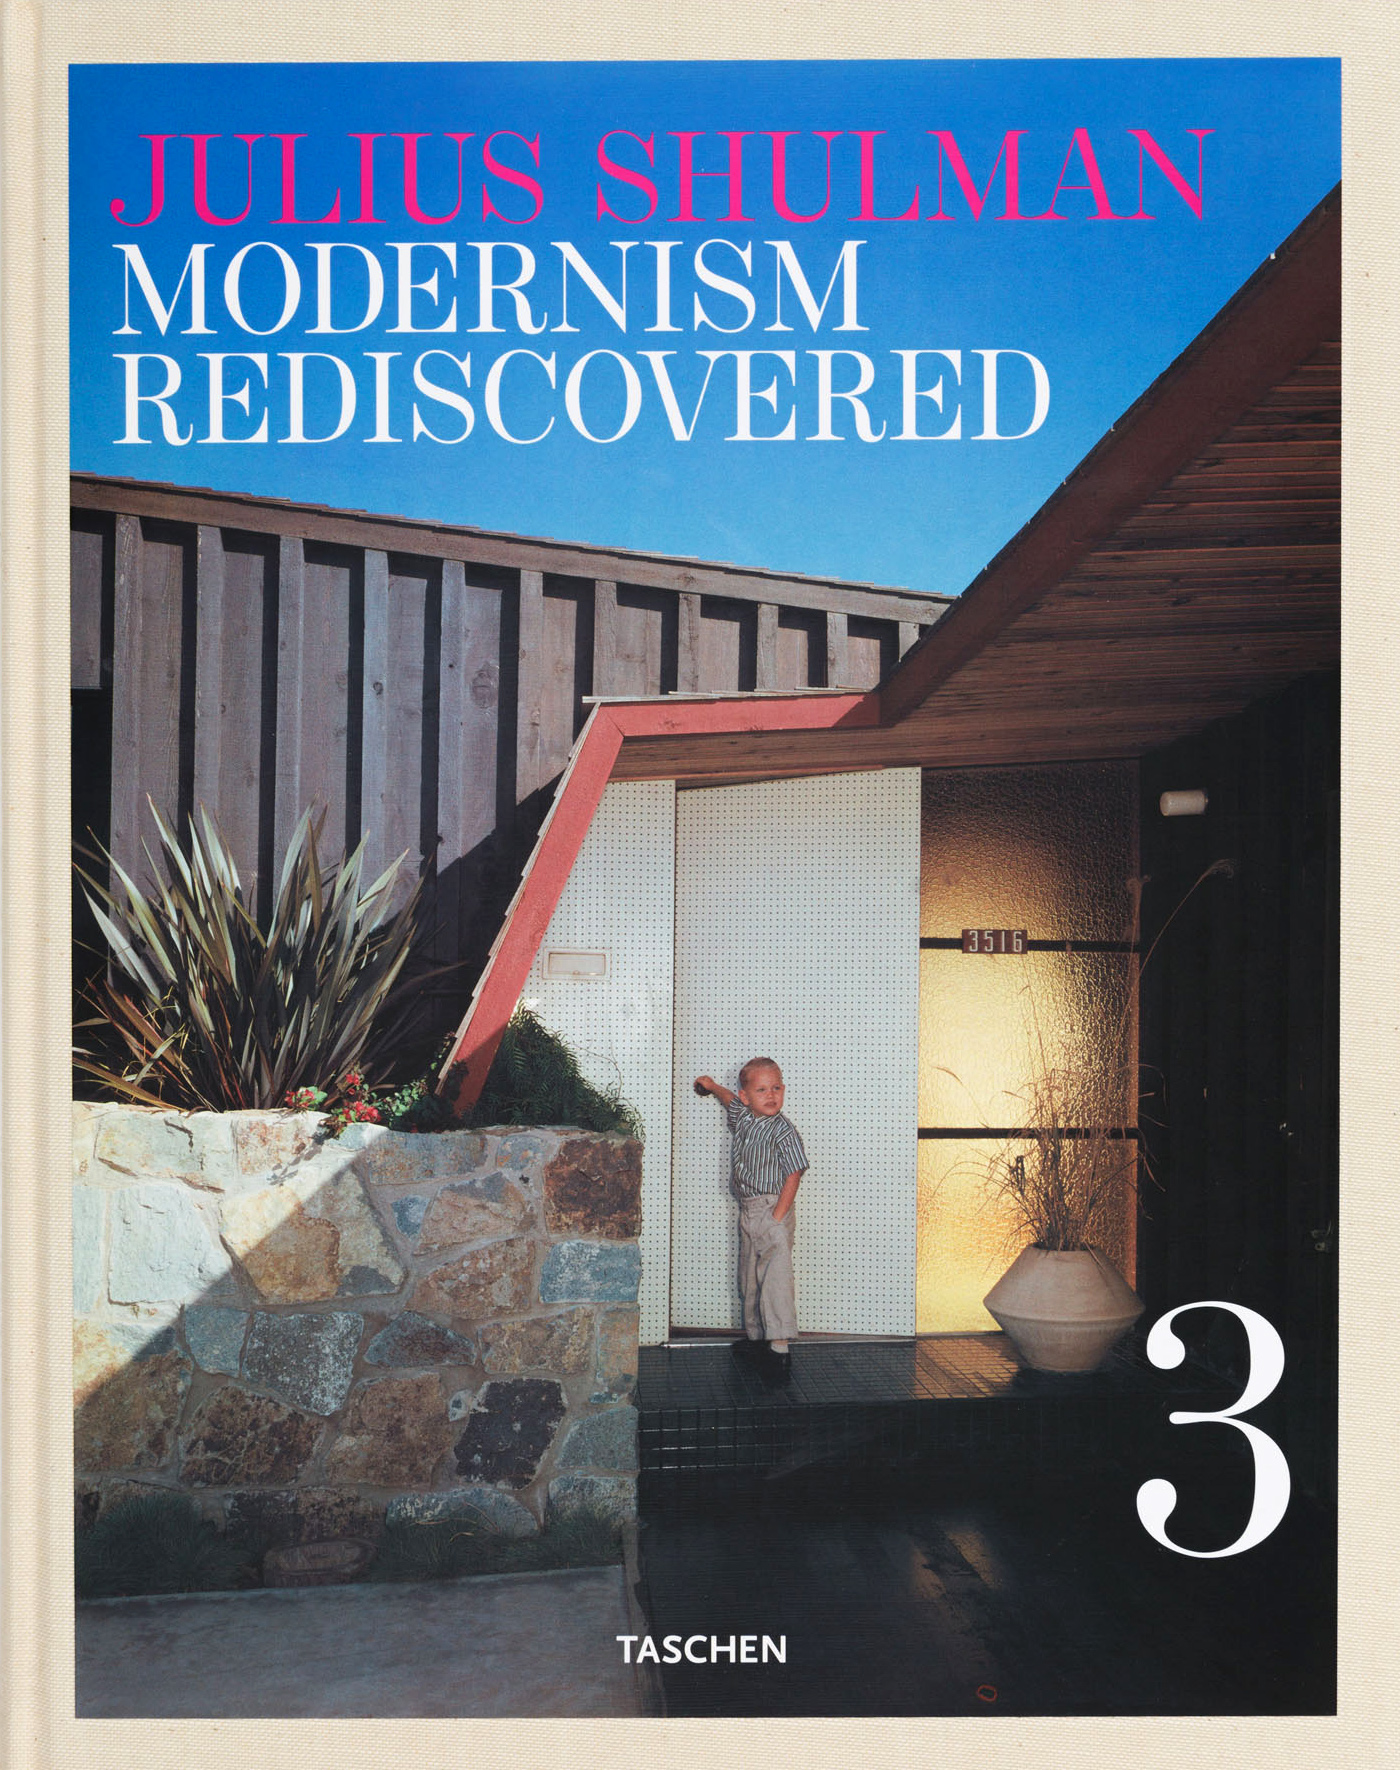 Julius Shulman: Modernism Rediscovered, Taschen 2007